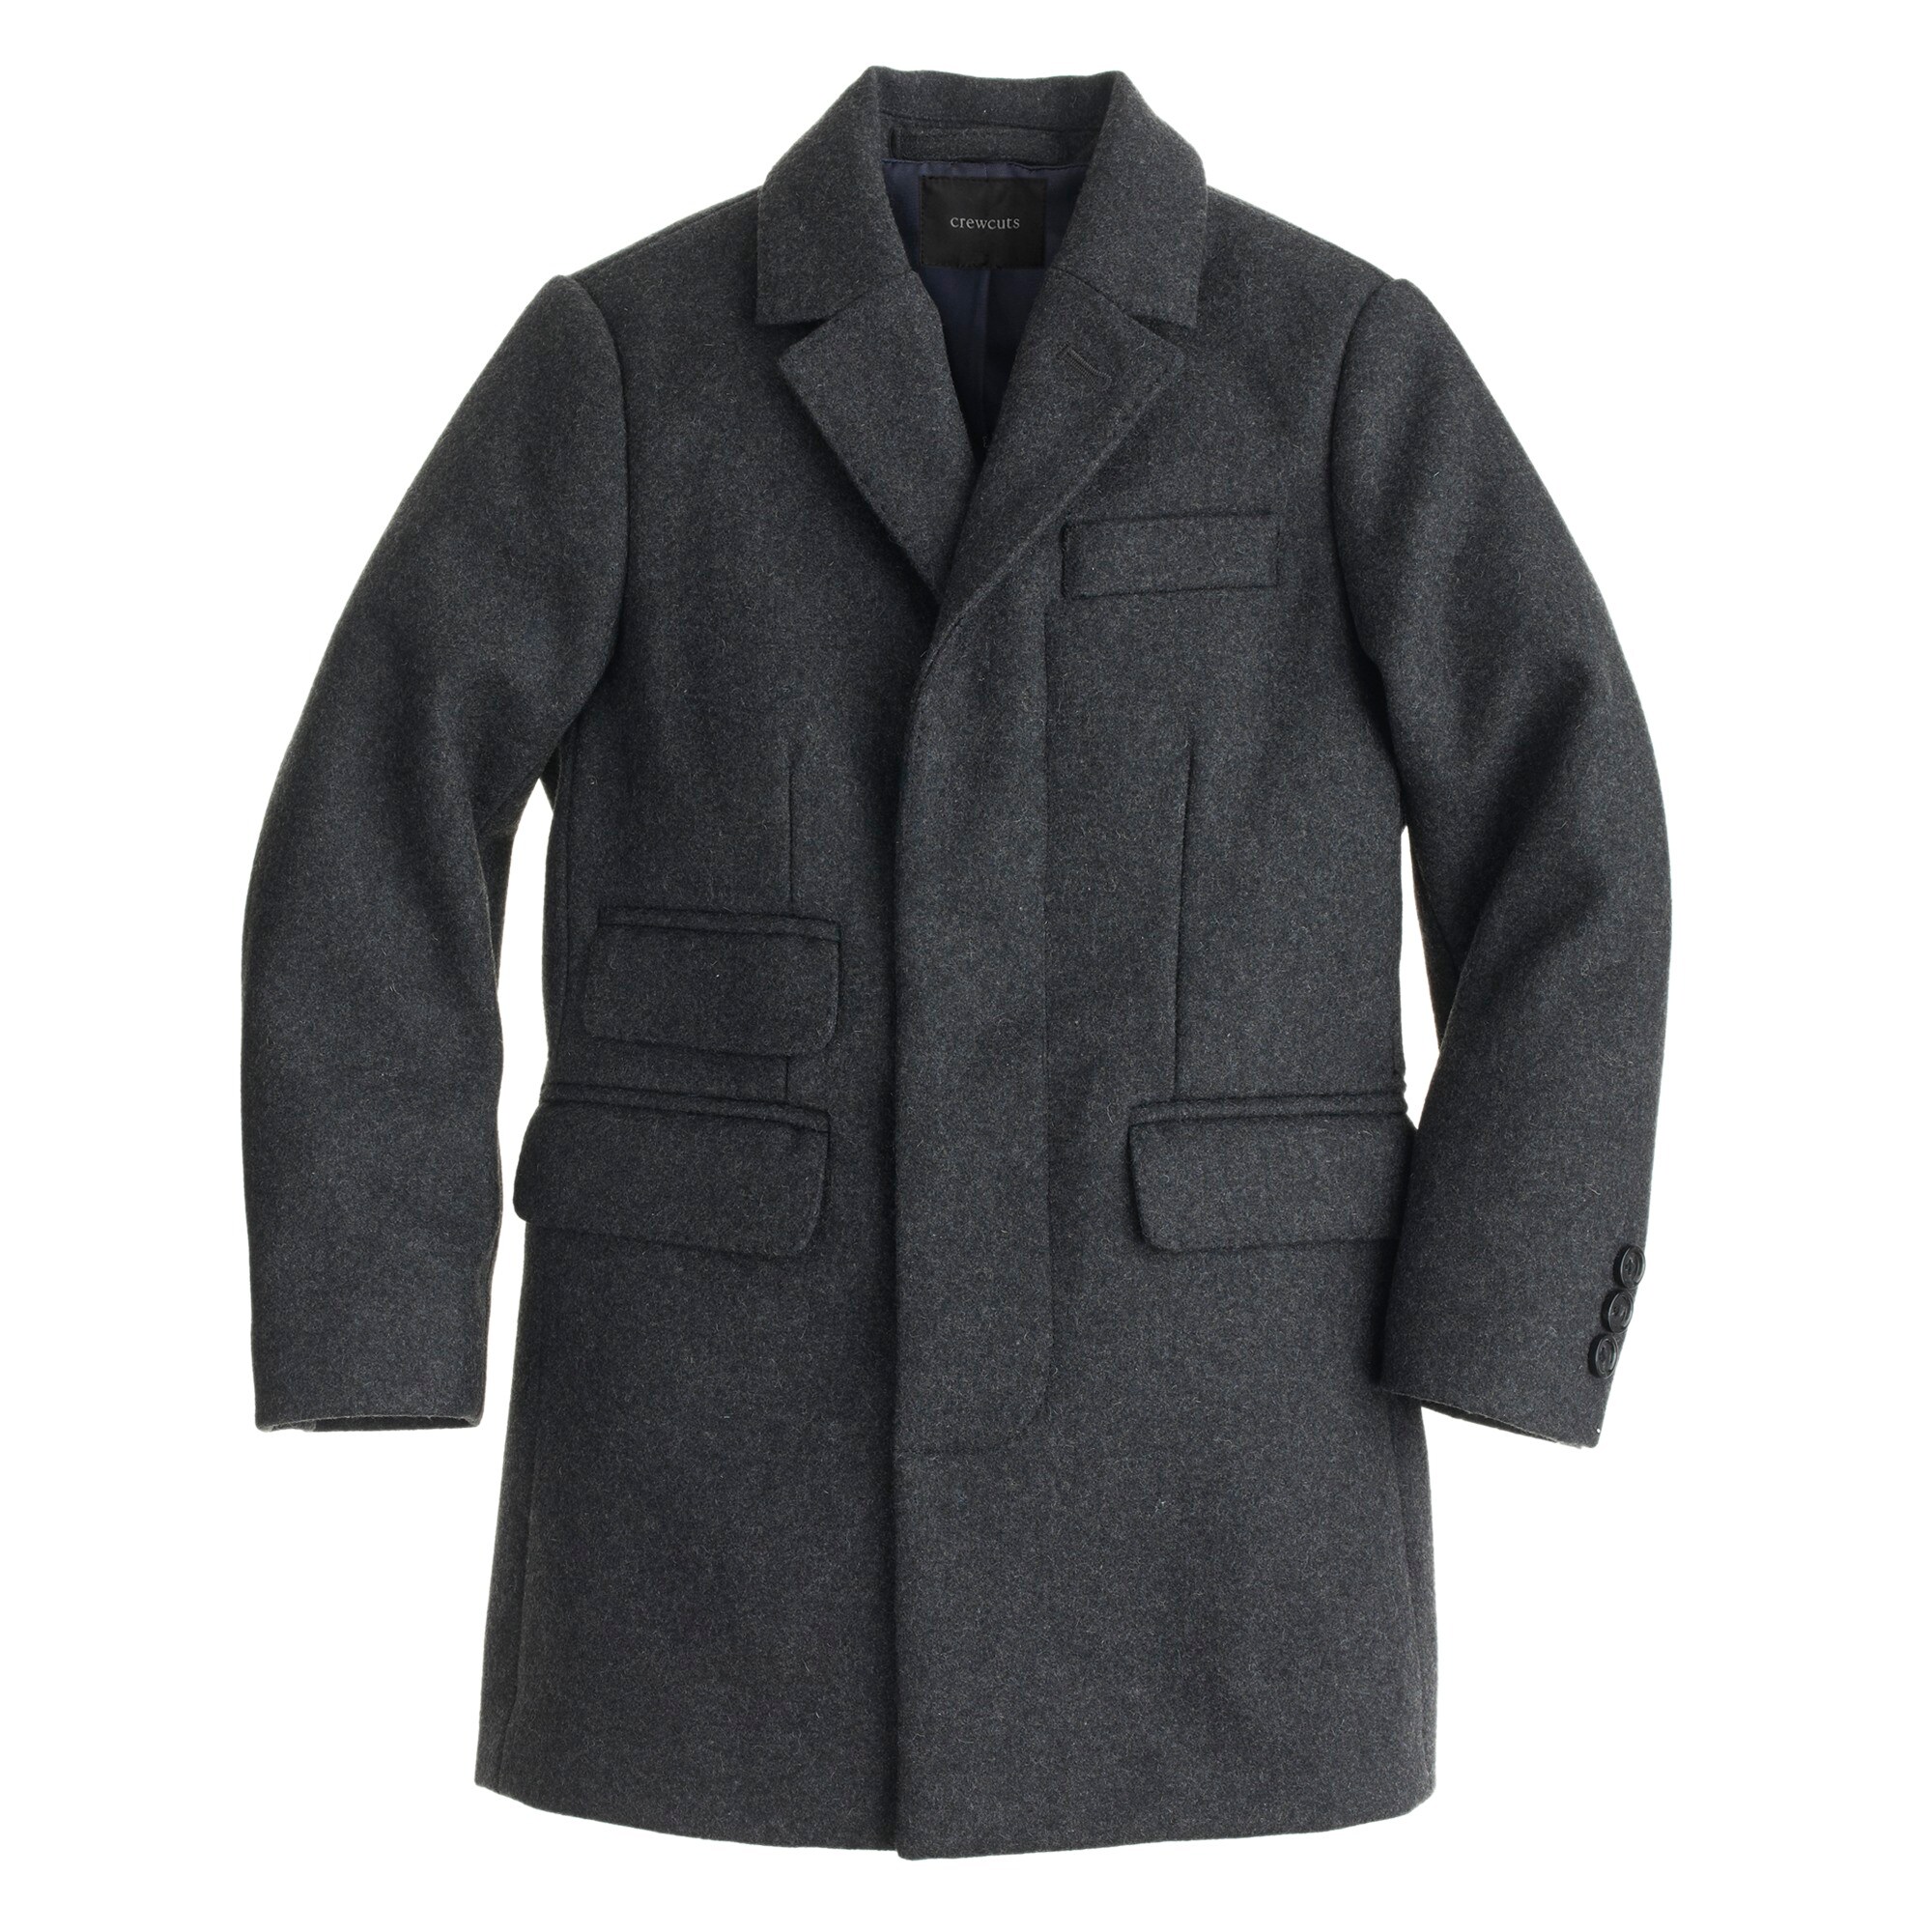 Boys' wool topcoat : outerwear | J.Crew